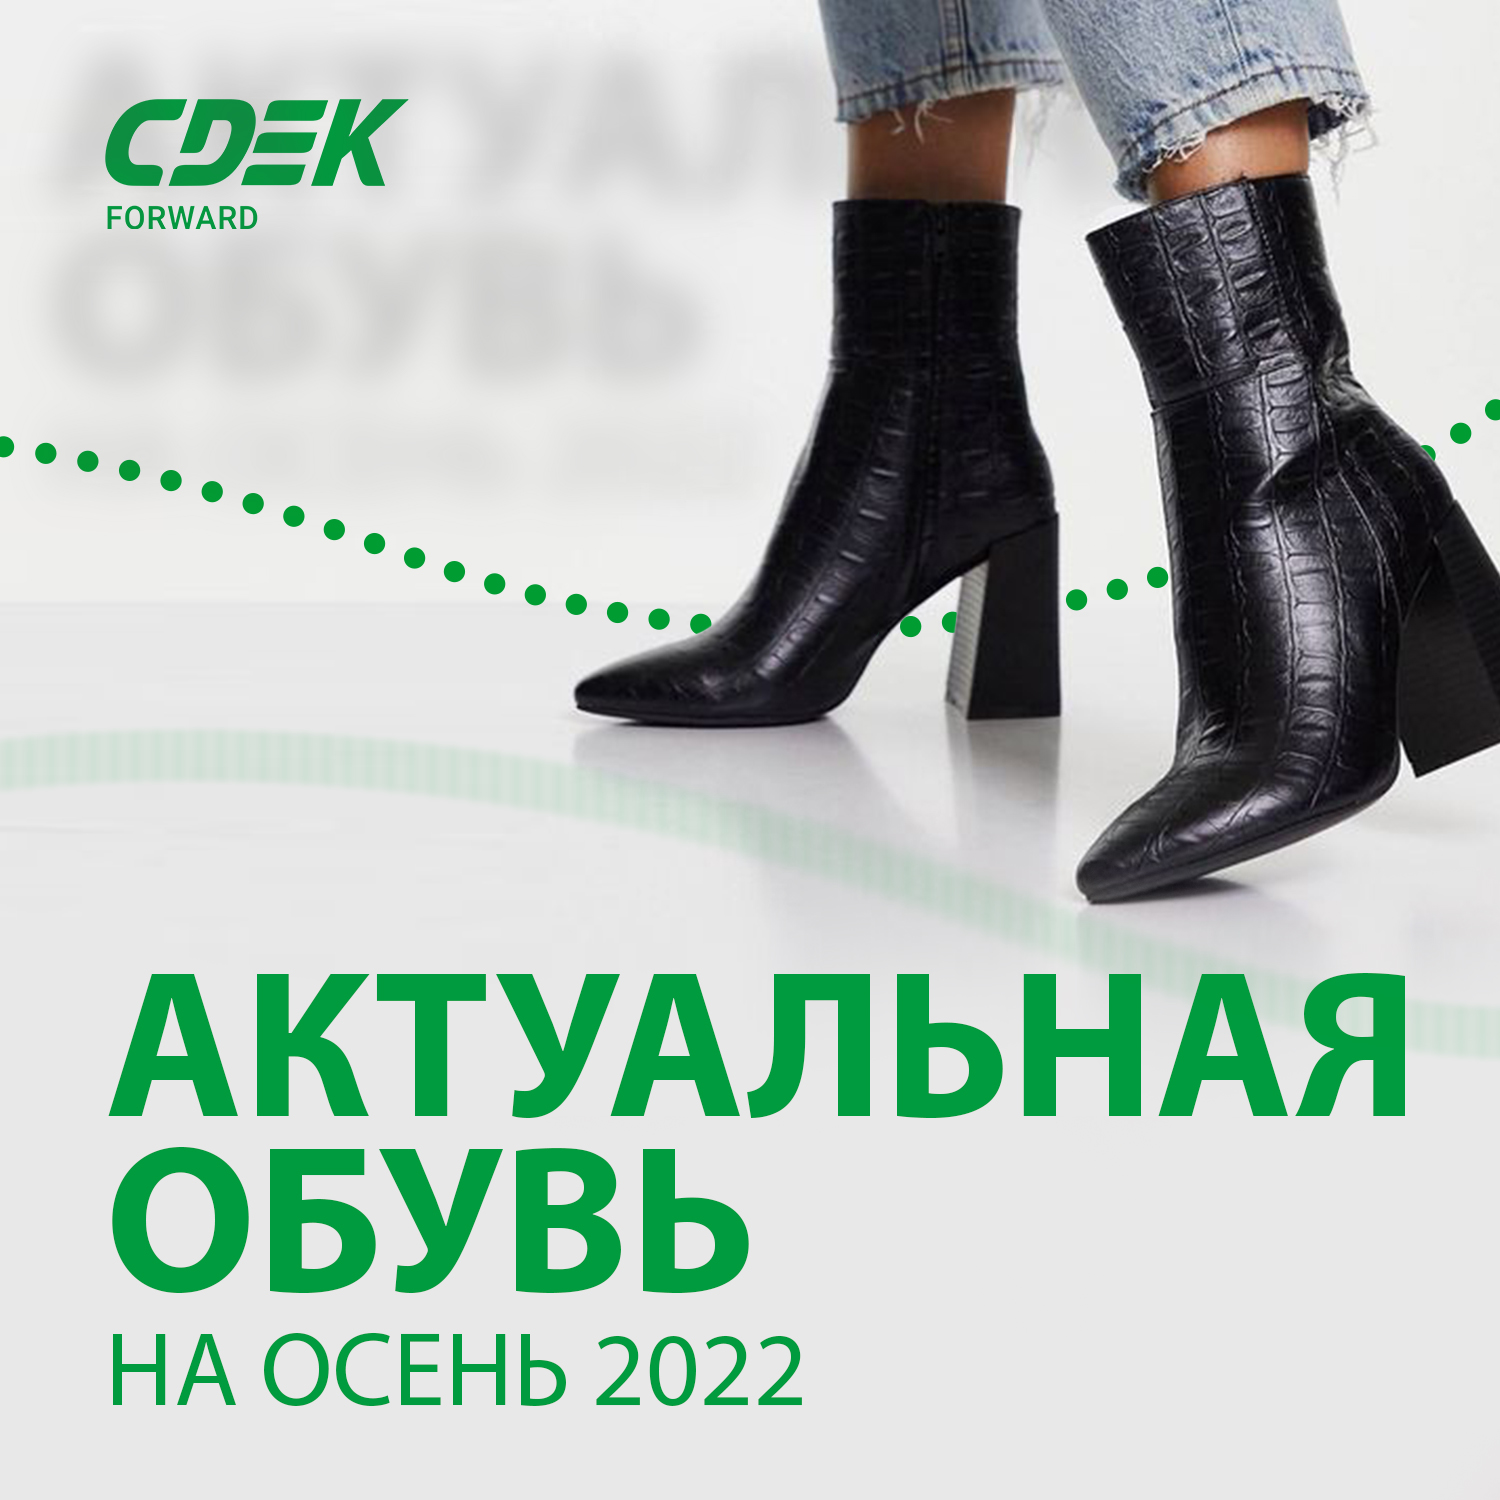 Подборка актуальной обуви на осень от разных брендов - Стилист компанииCDEK Forward Альфия Измайлова